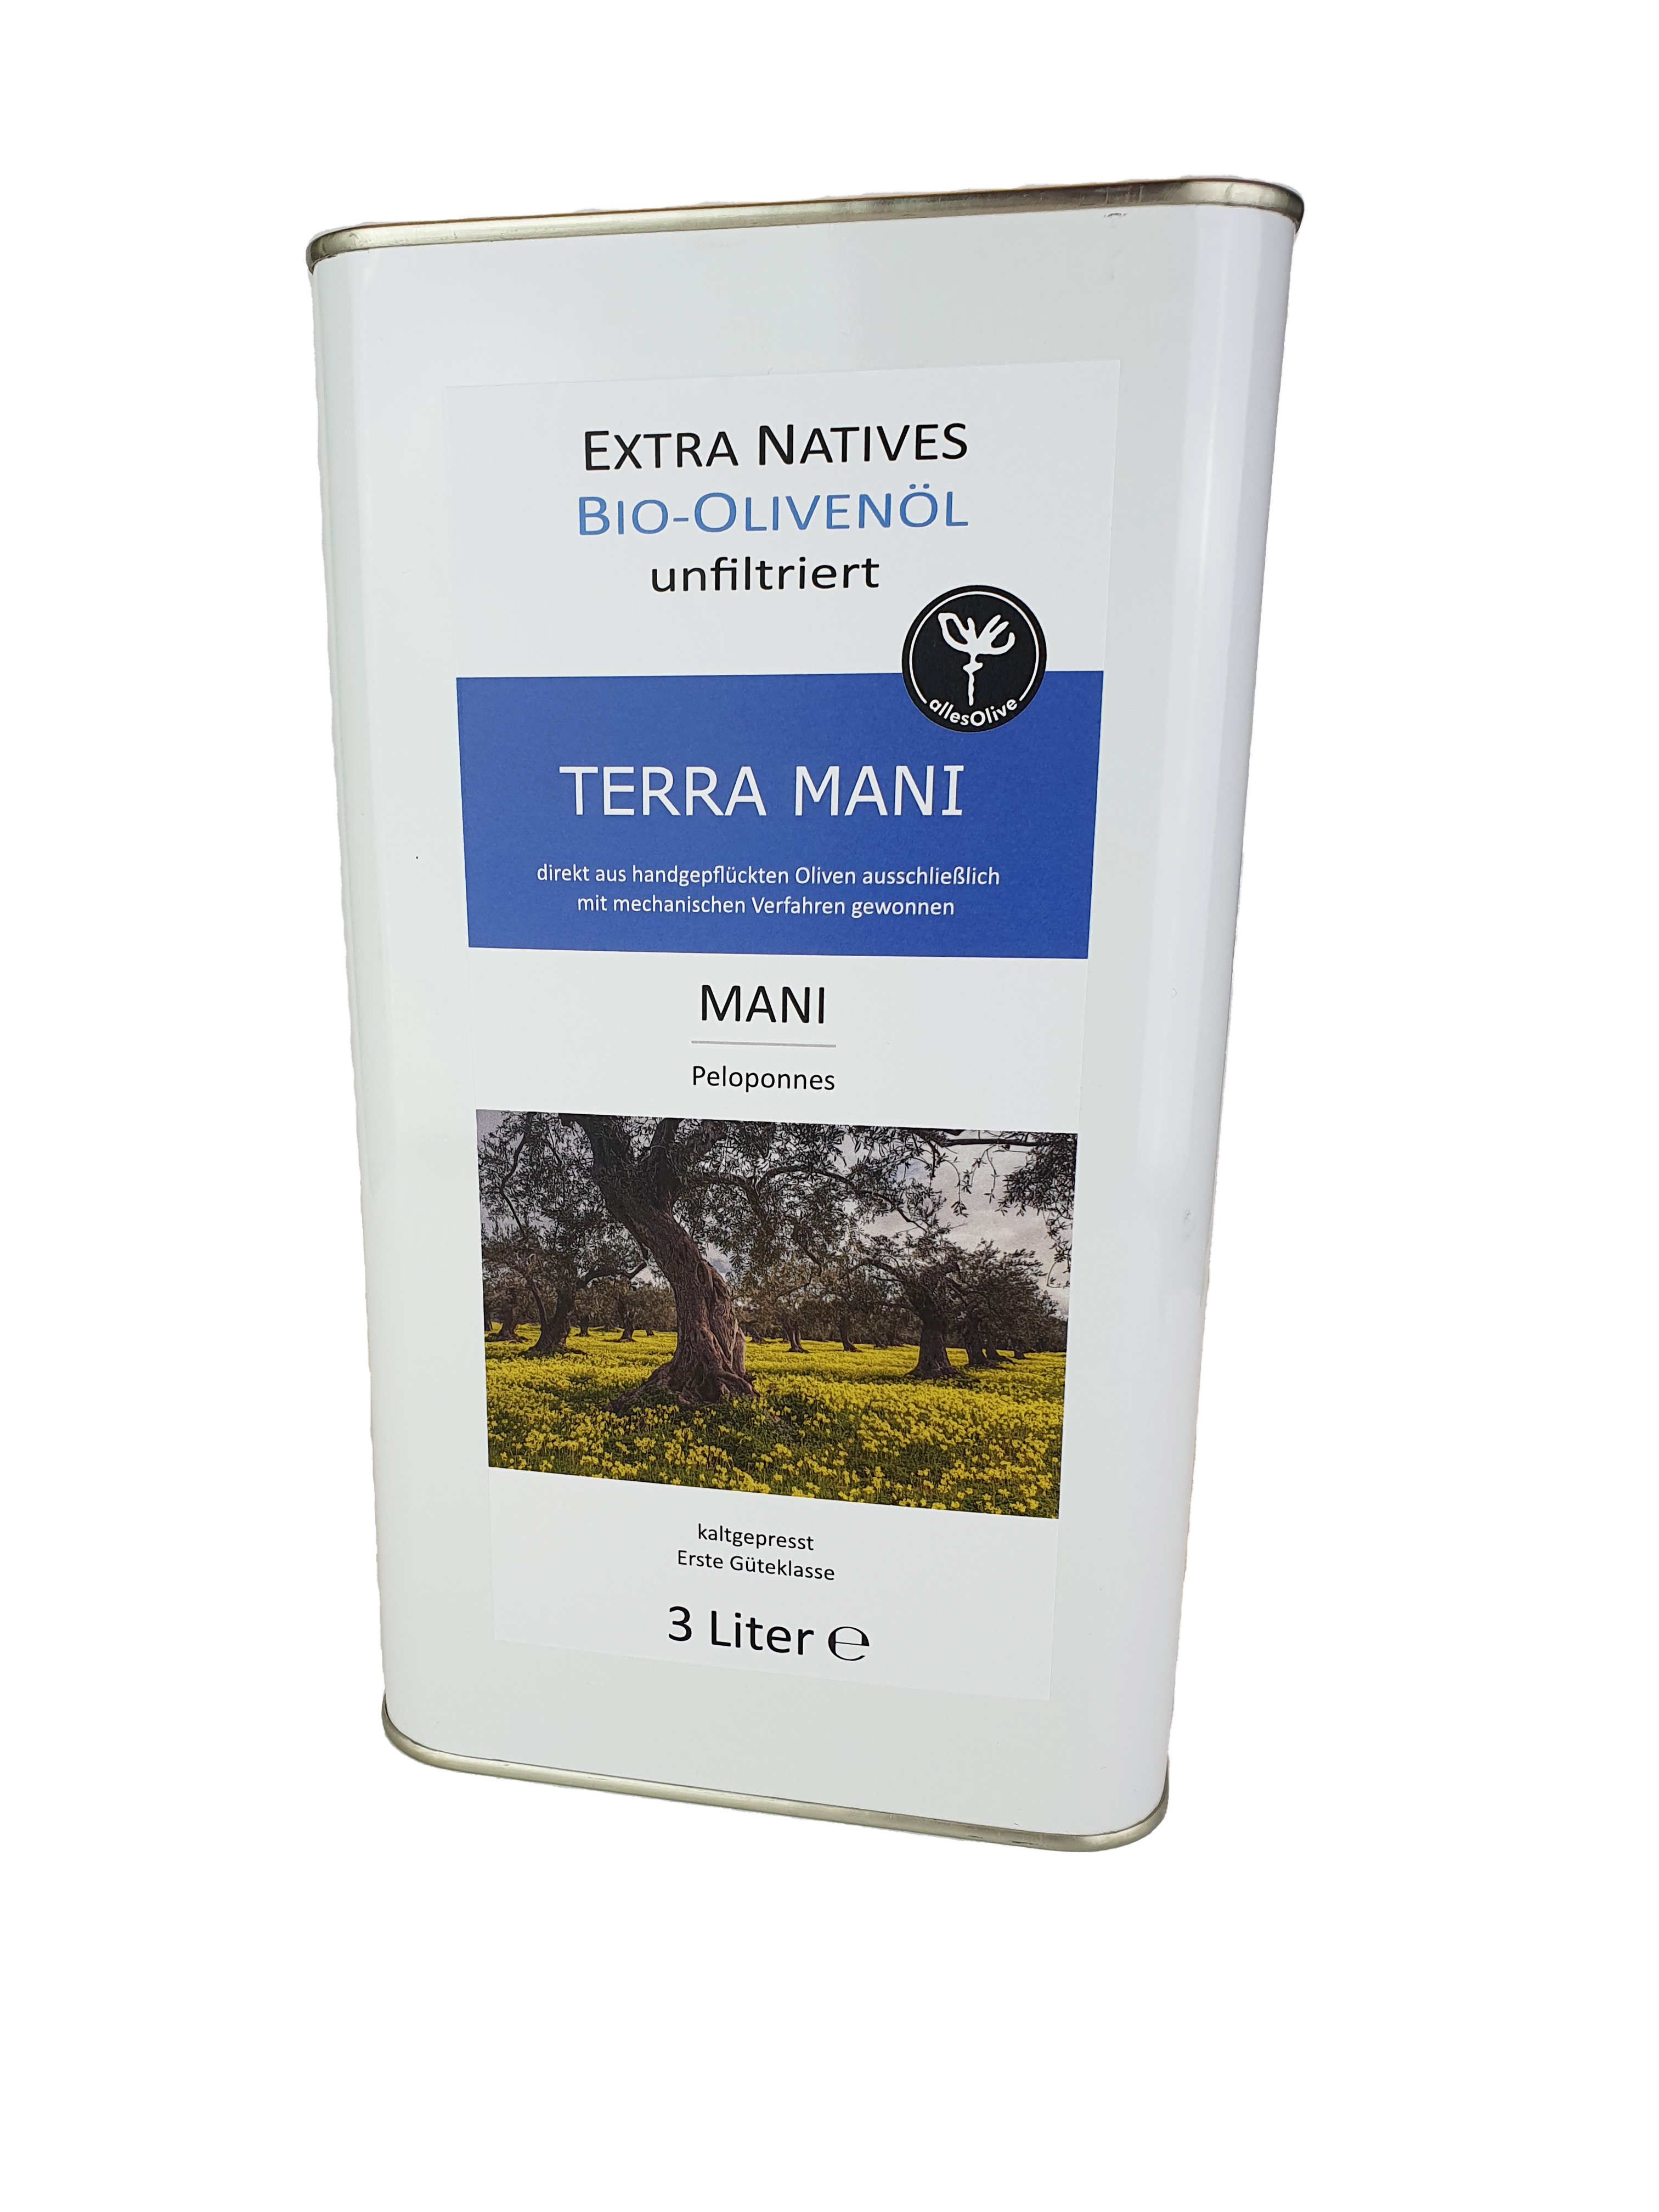 Olio di oliva extra vergine biologico nativo TERRA-MANI, non filtrato, in contenitore da 3 litri.